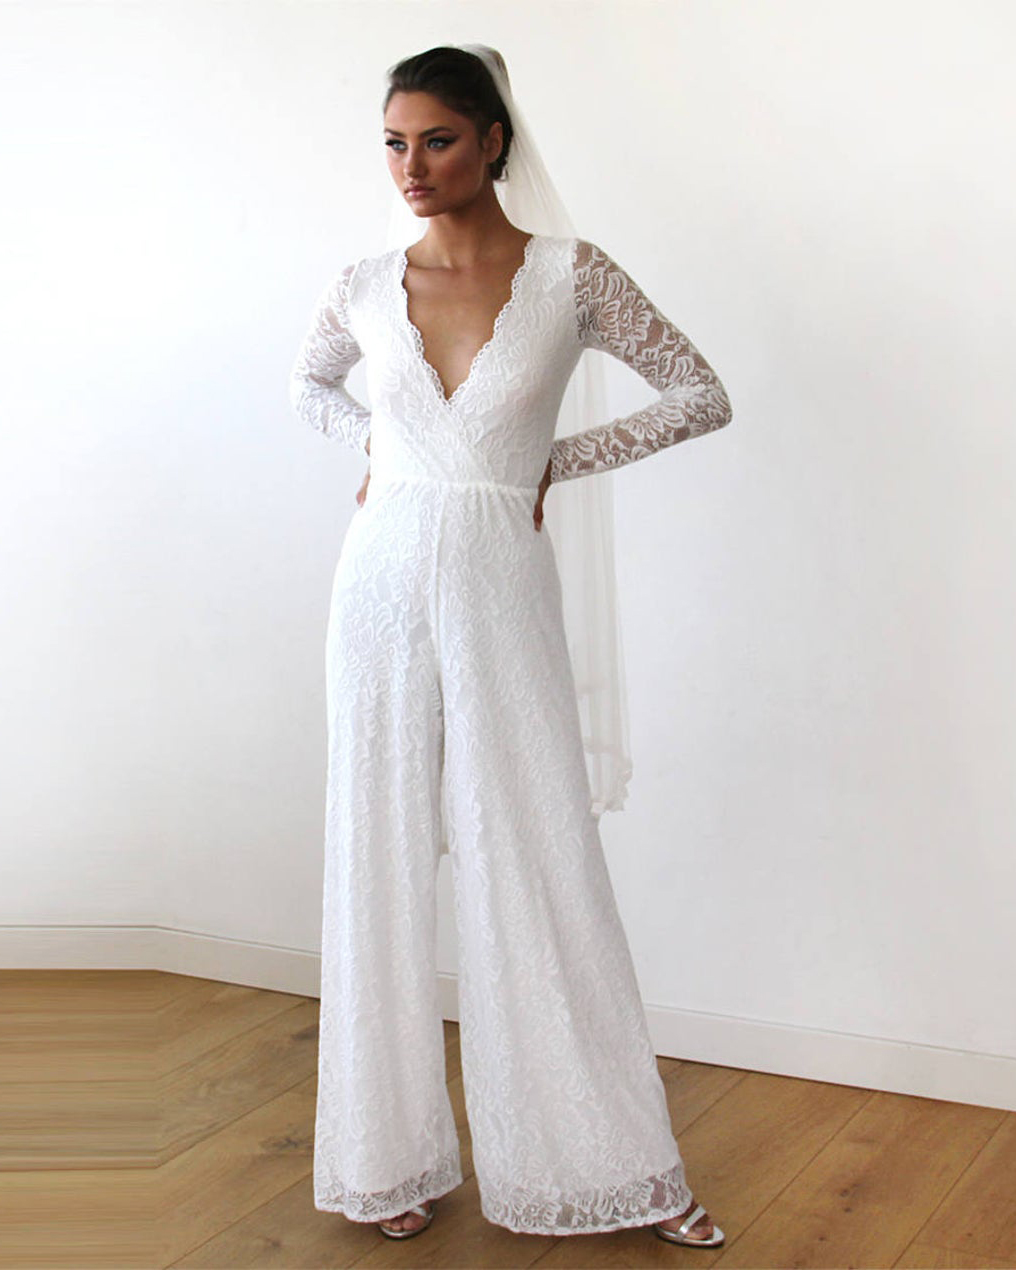 Blush Fashion Lace Bridal Jumpsuit Bridal Jumpsuits Under 500 Bridal Musings - 24 bộ áo liền quần cô dâu sành điệu (Tất cả đều có giá dưới 500 đô la!)